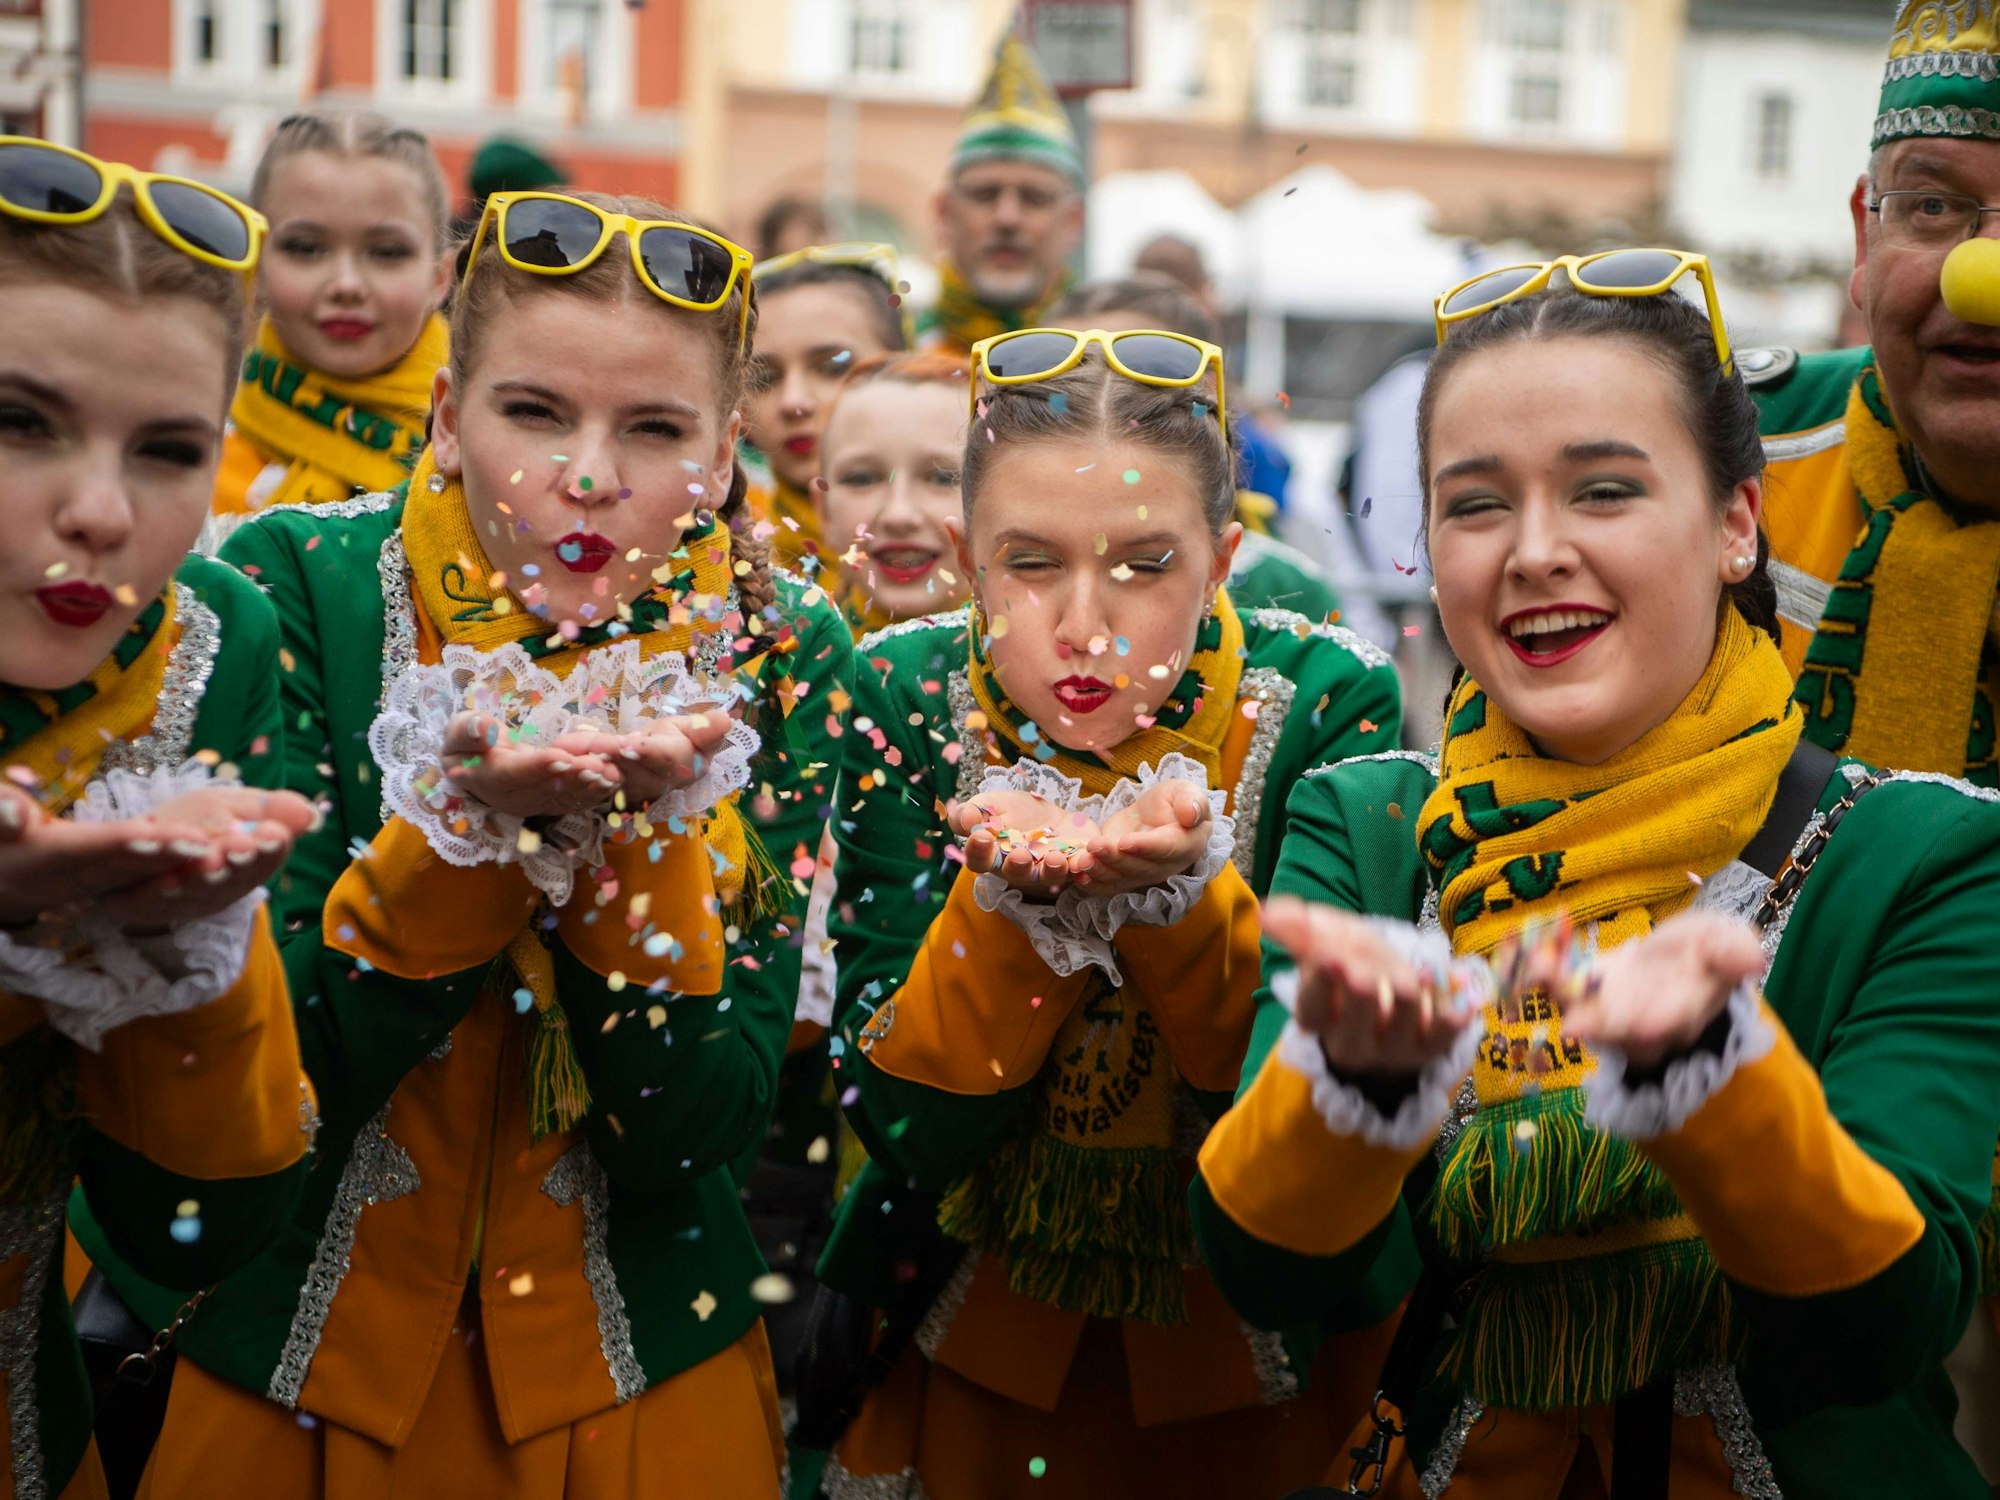 Das Bild zeigt Tänzerinnen der Hovener Jungkarnevalisten, die Konfetti in Richtung der Kamera pusten.